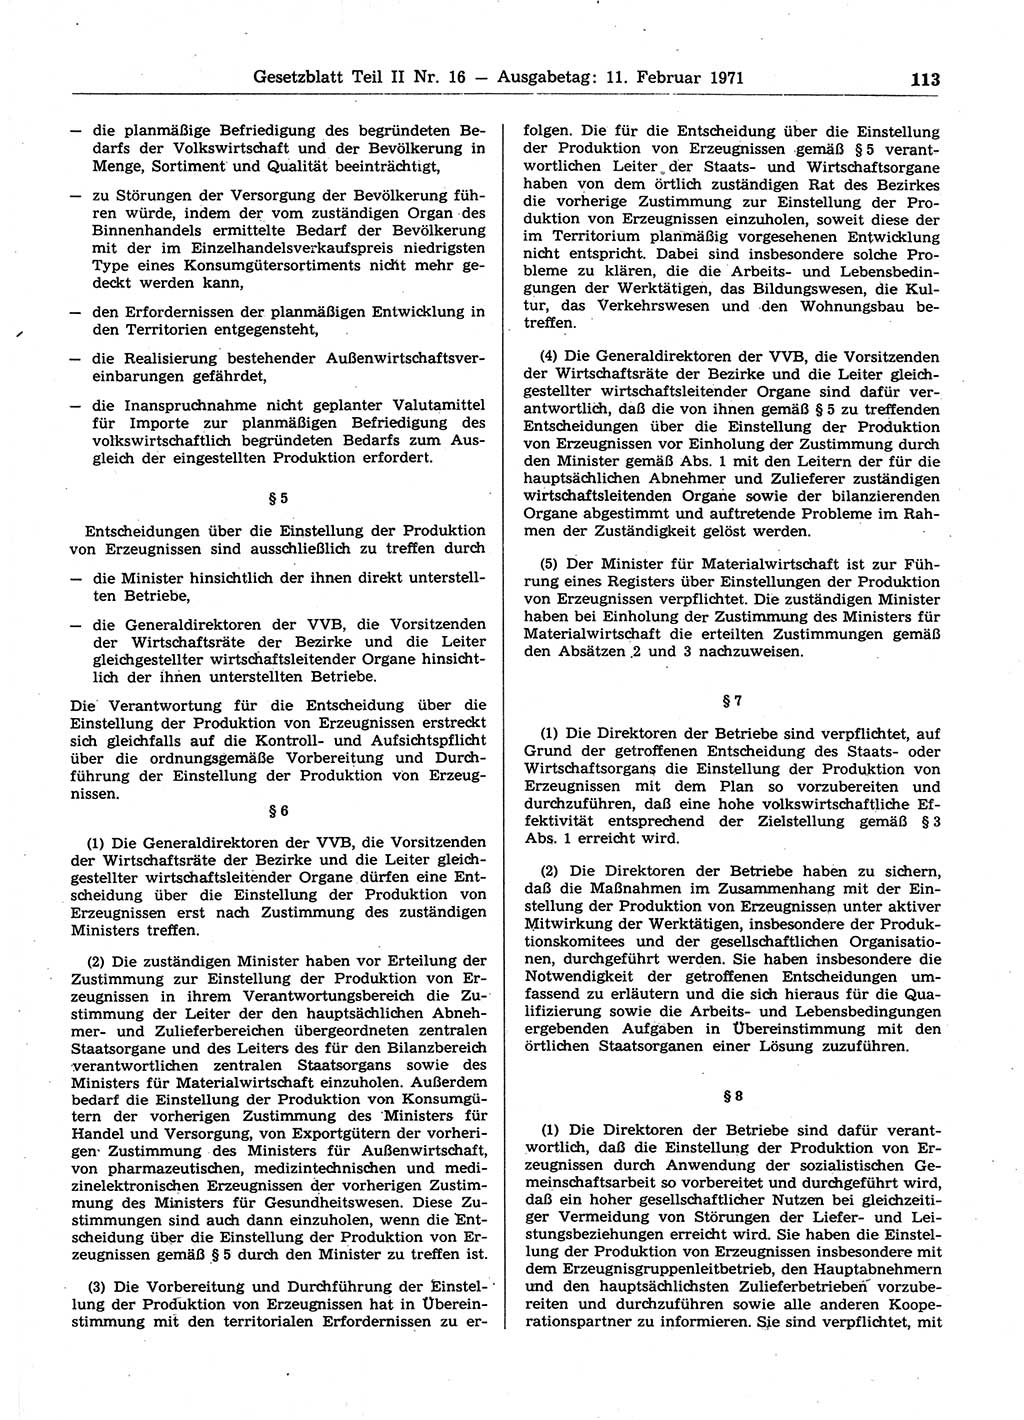 Gesetzblatt (GBl.) der Deutschen Demokratischen Republik (DDR) Teil ⅠⅠ 1971, Seite 113 (GBl. DDR ⅠⅠ 1971, S. 113)